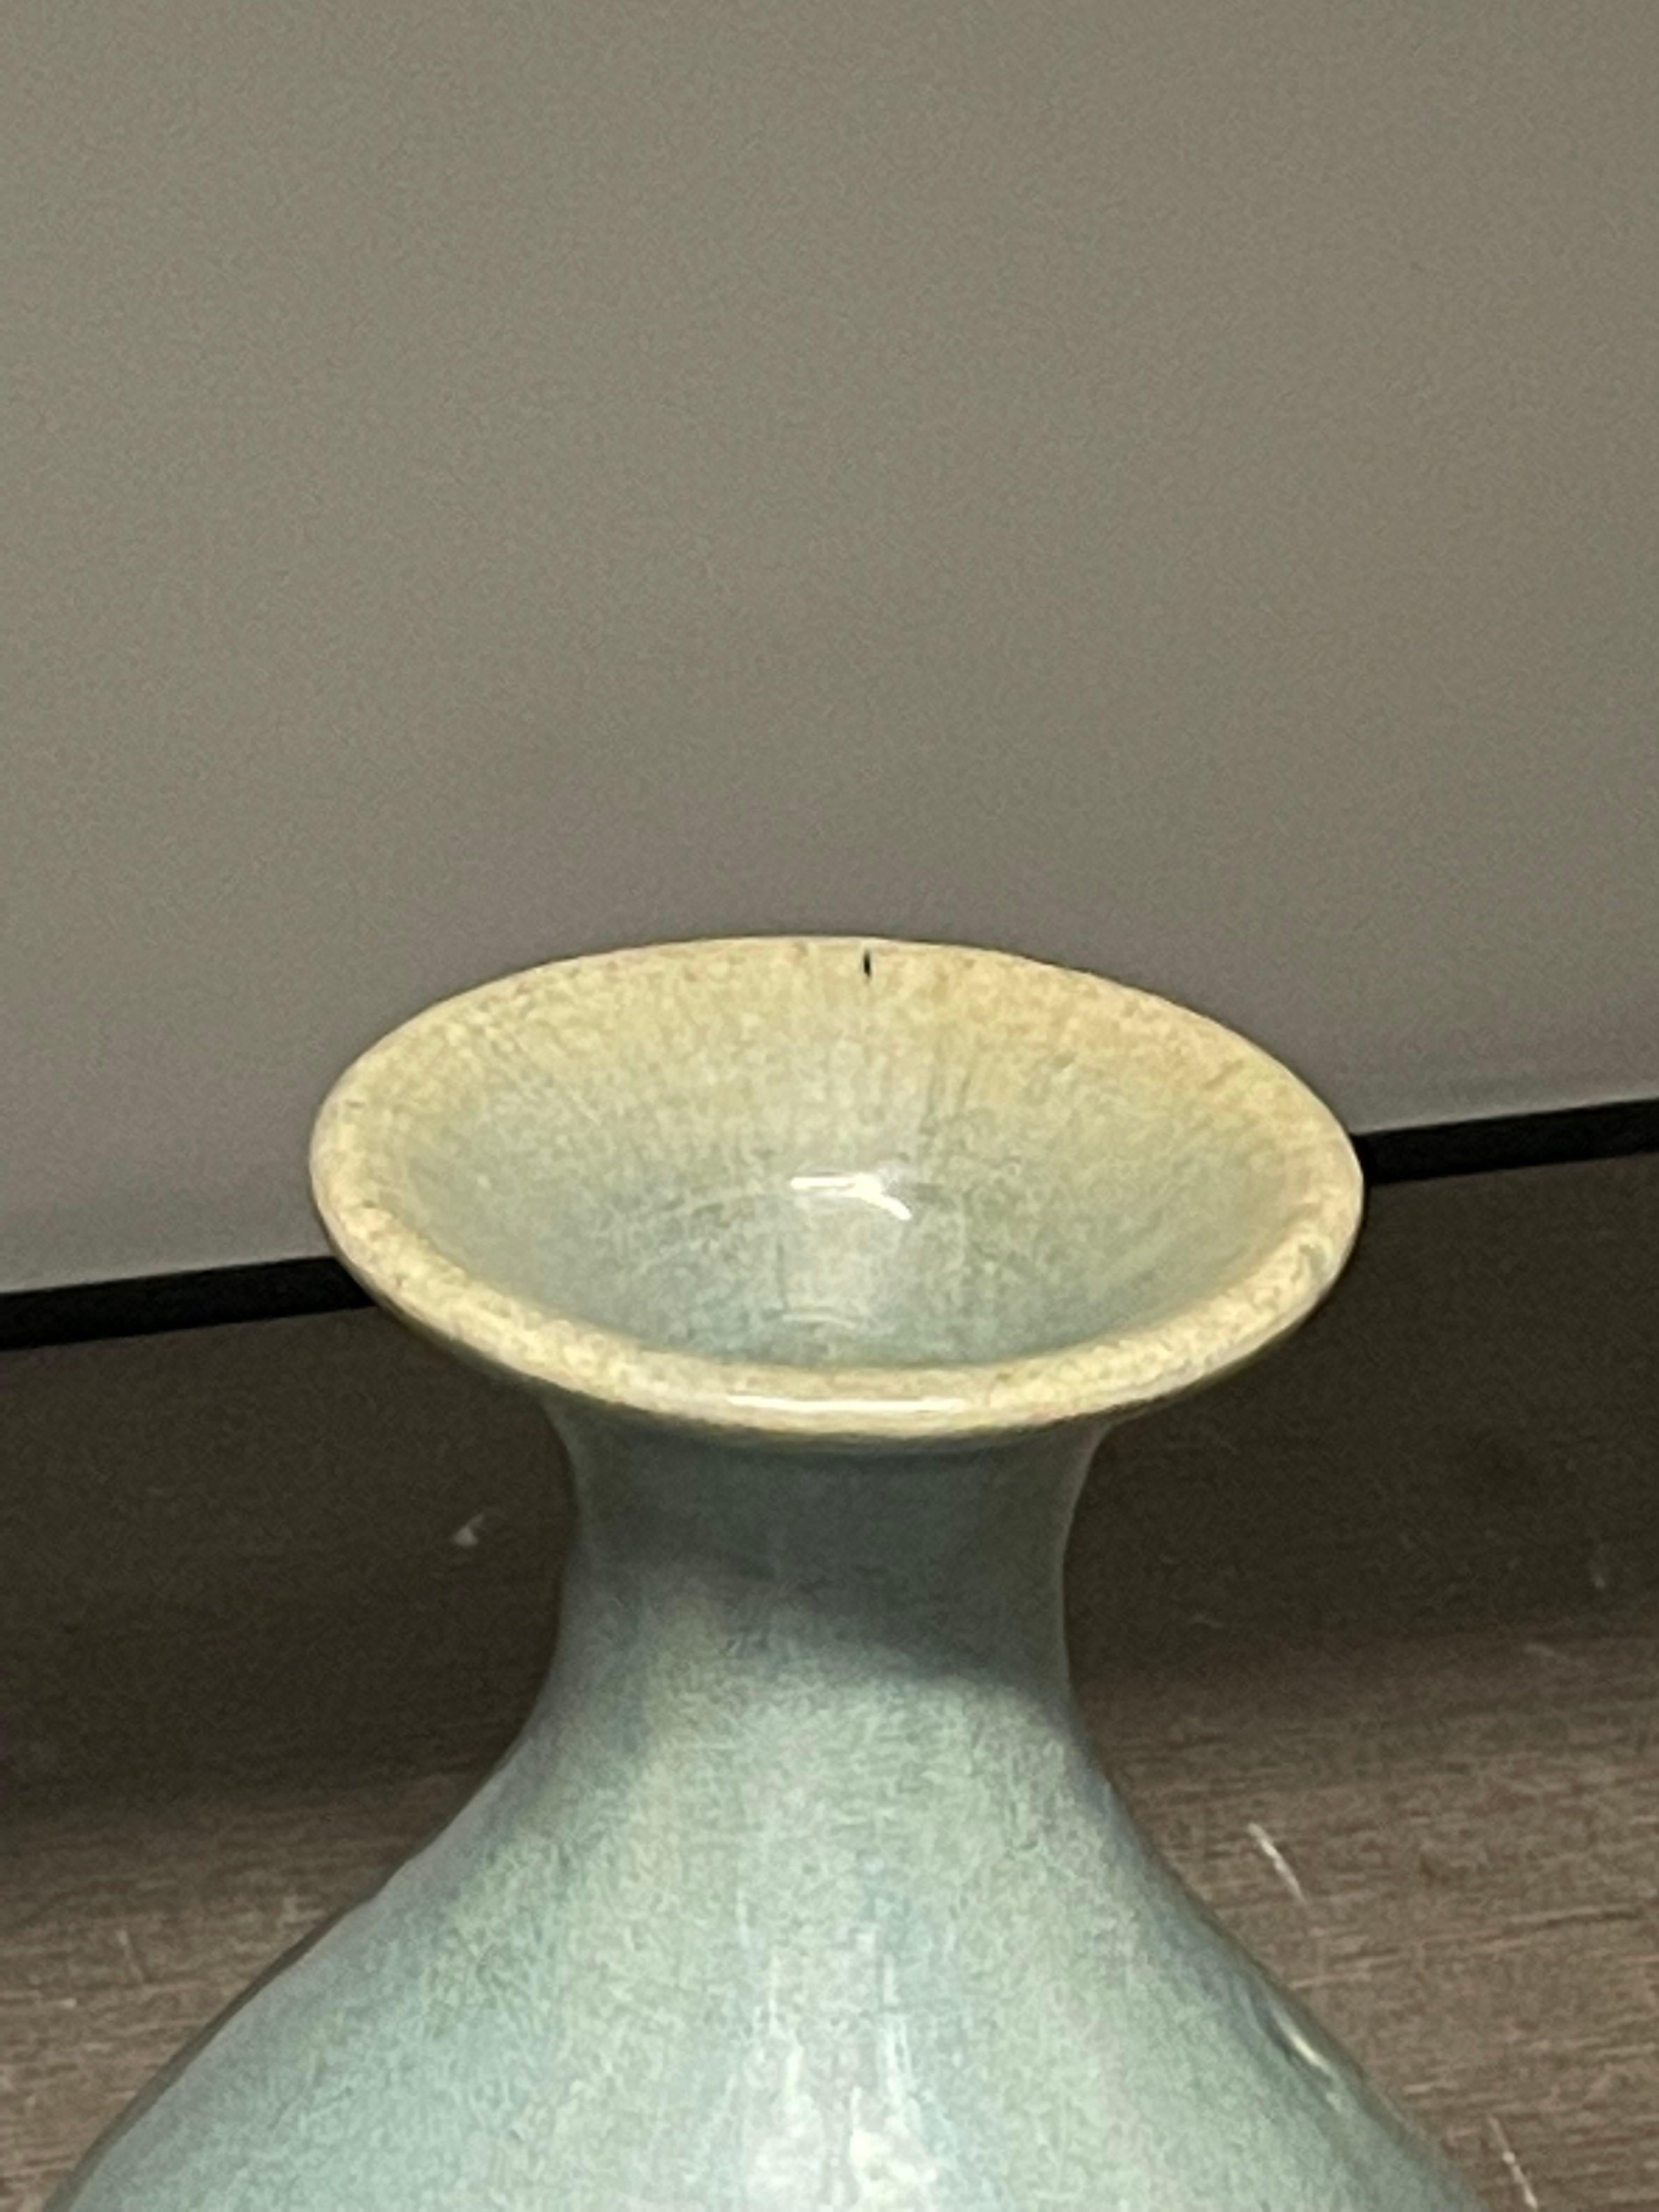 Contemporary Chinese washed turquoise glazed vase.
Tulip shape.
